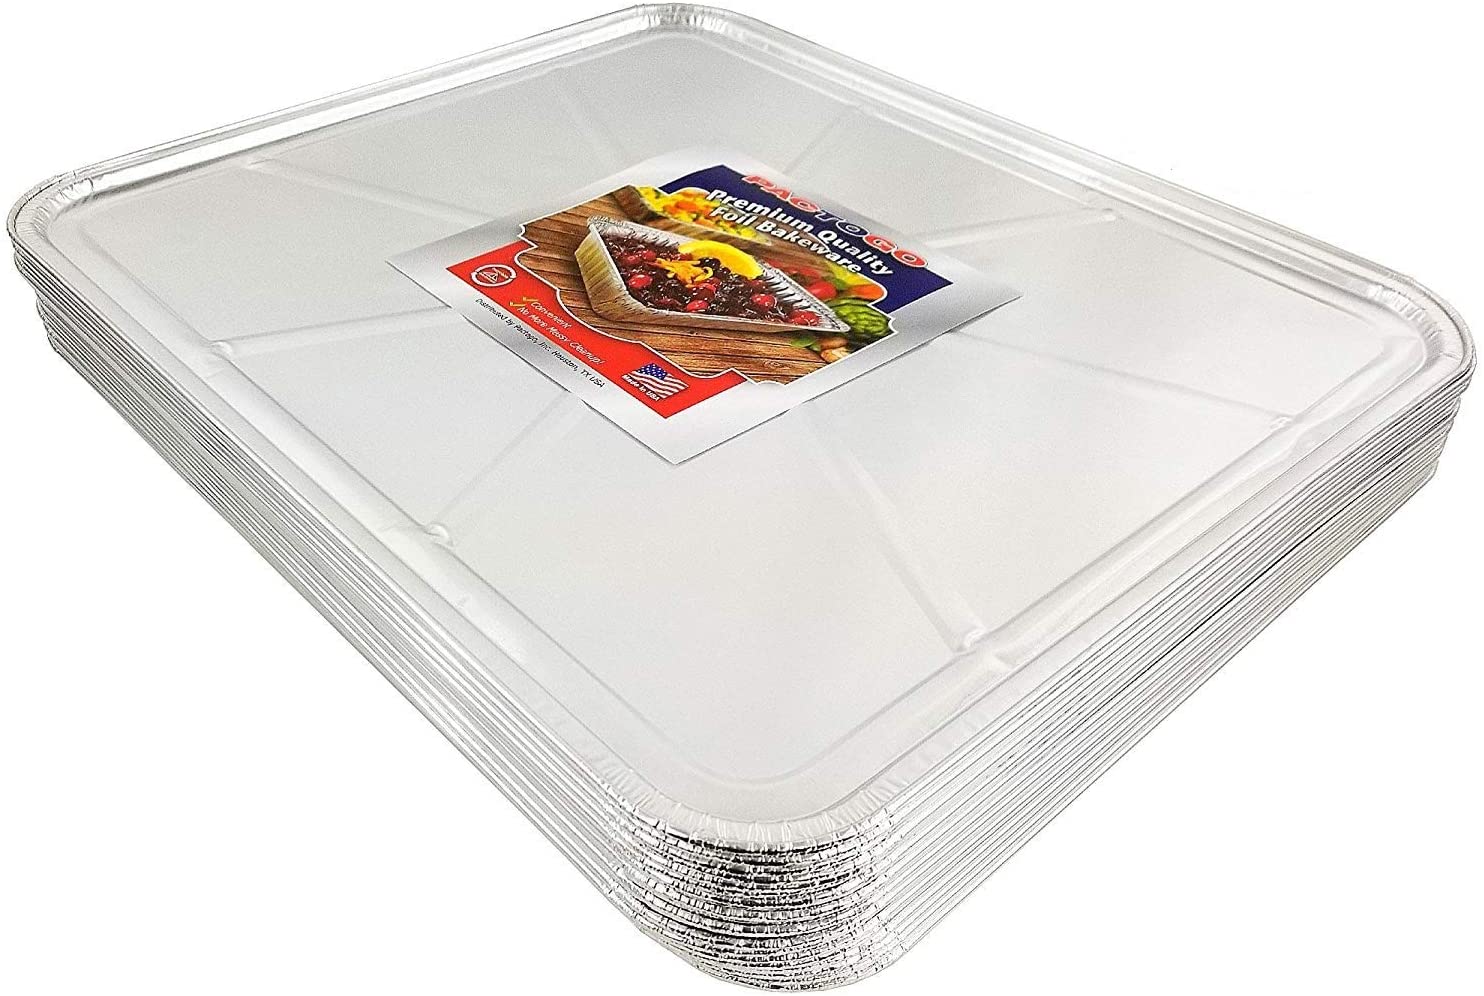 Aluminum Foil Cookware, Aluminum Foil Liners